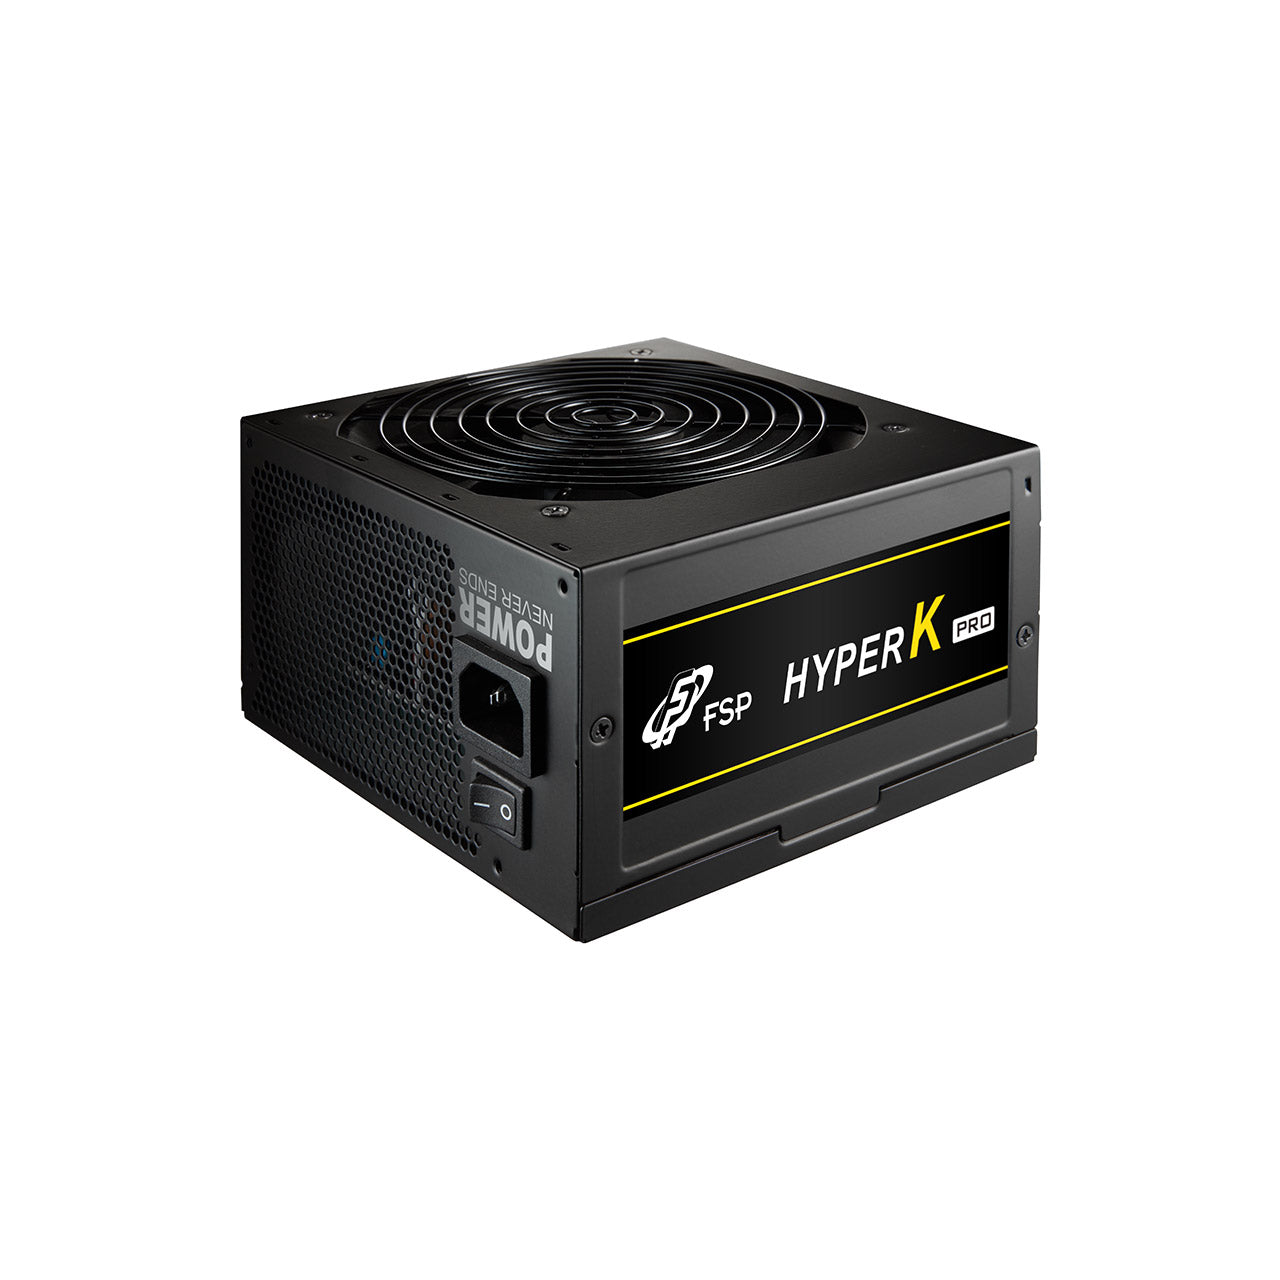 Hyper K Pro 700W